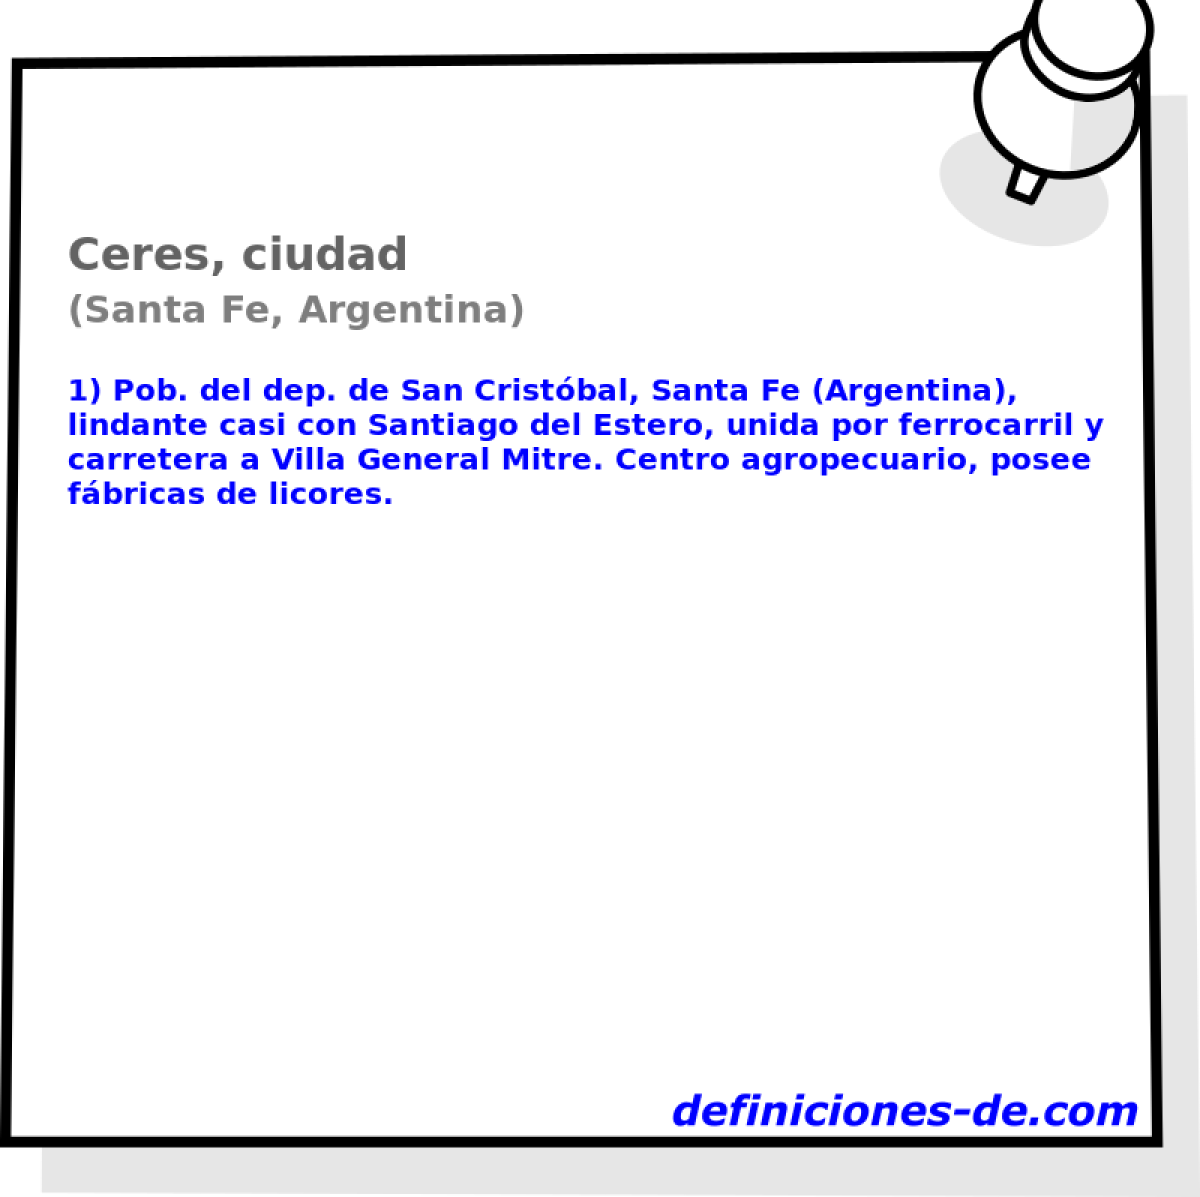 Ceres, ciudad (Santa Fe, Argentina)